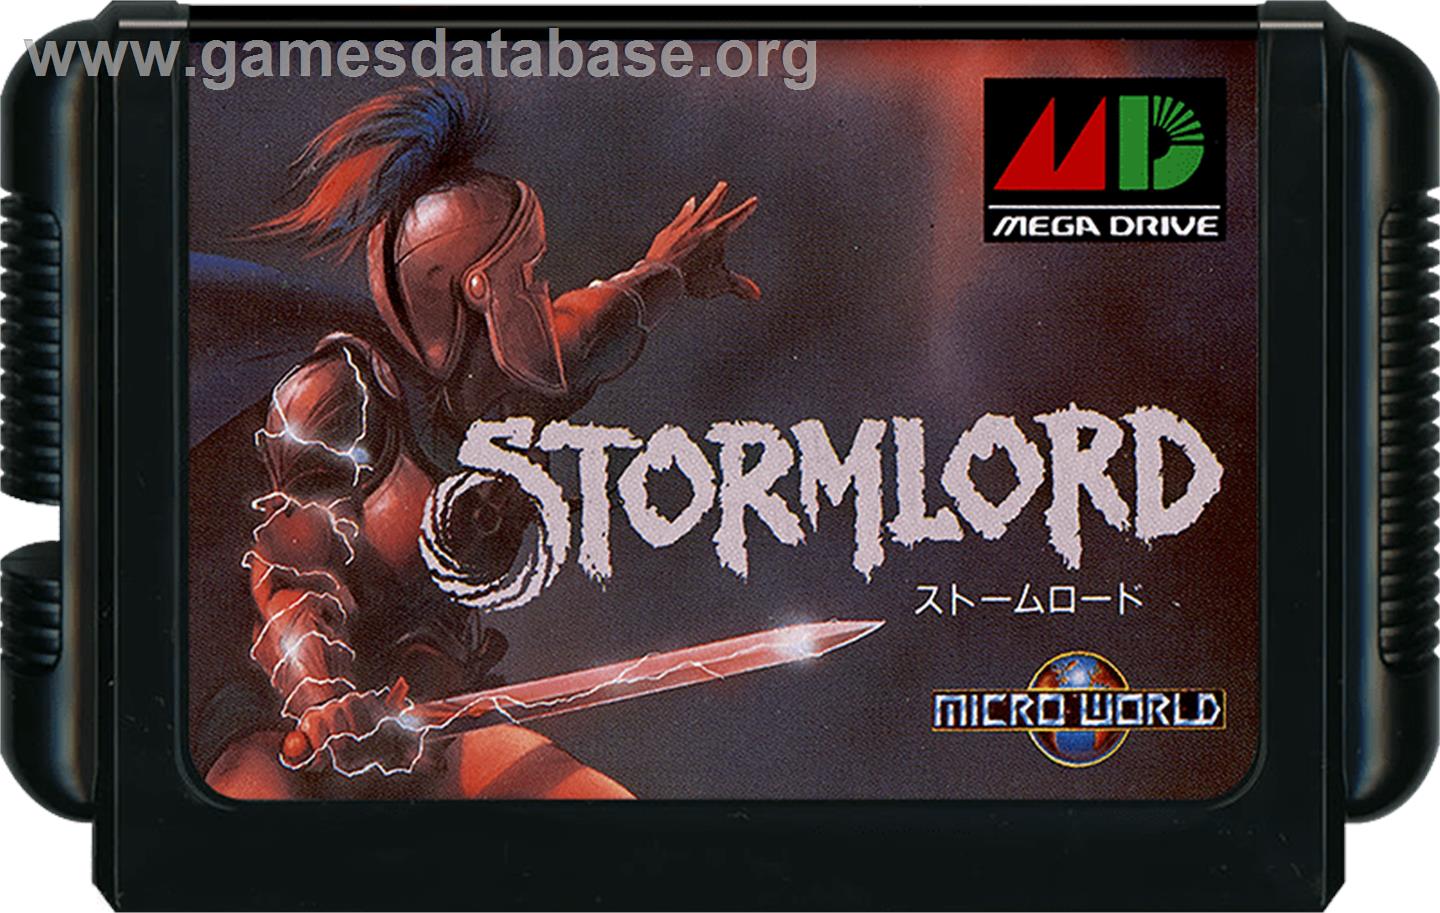 Stormlord - Sega Genesis - Artwork - Cartridge